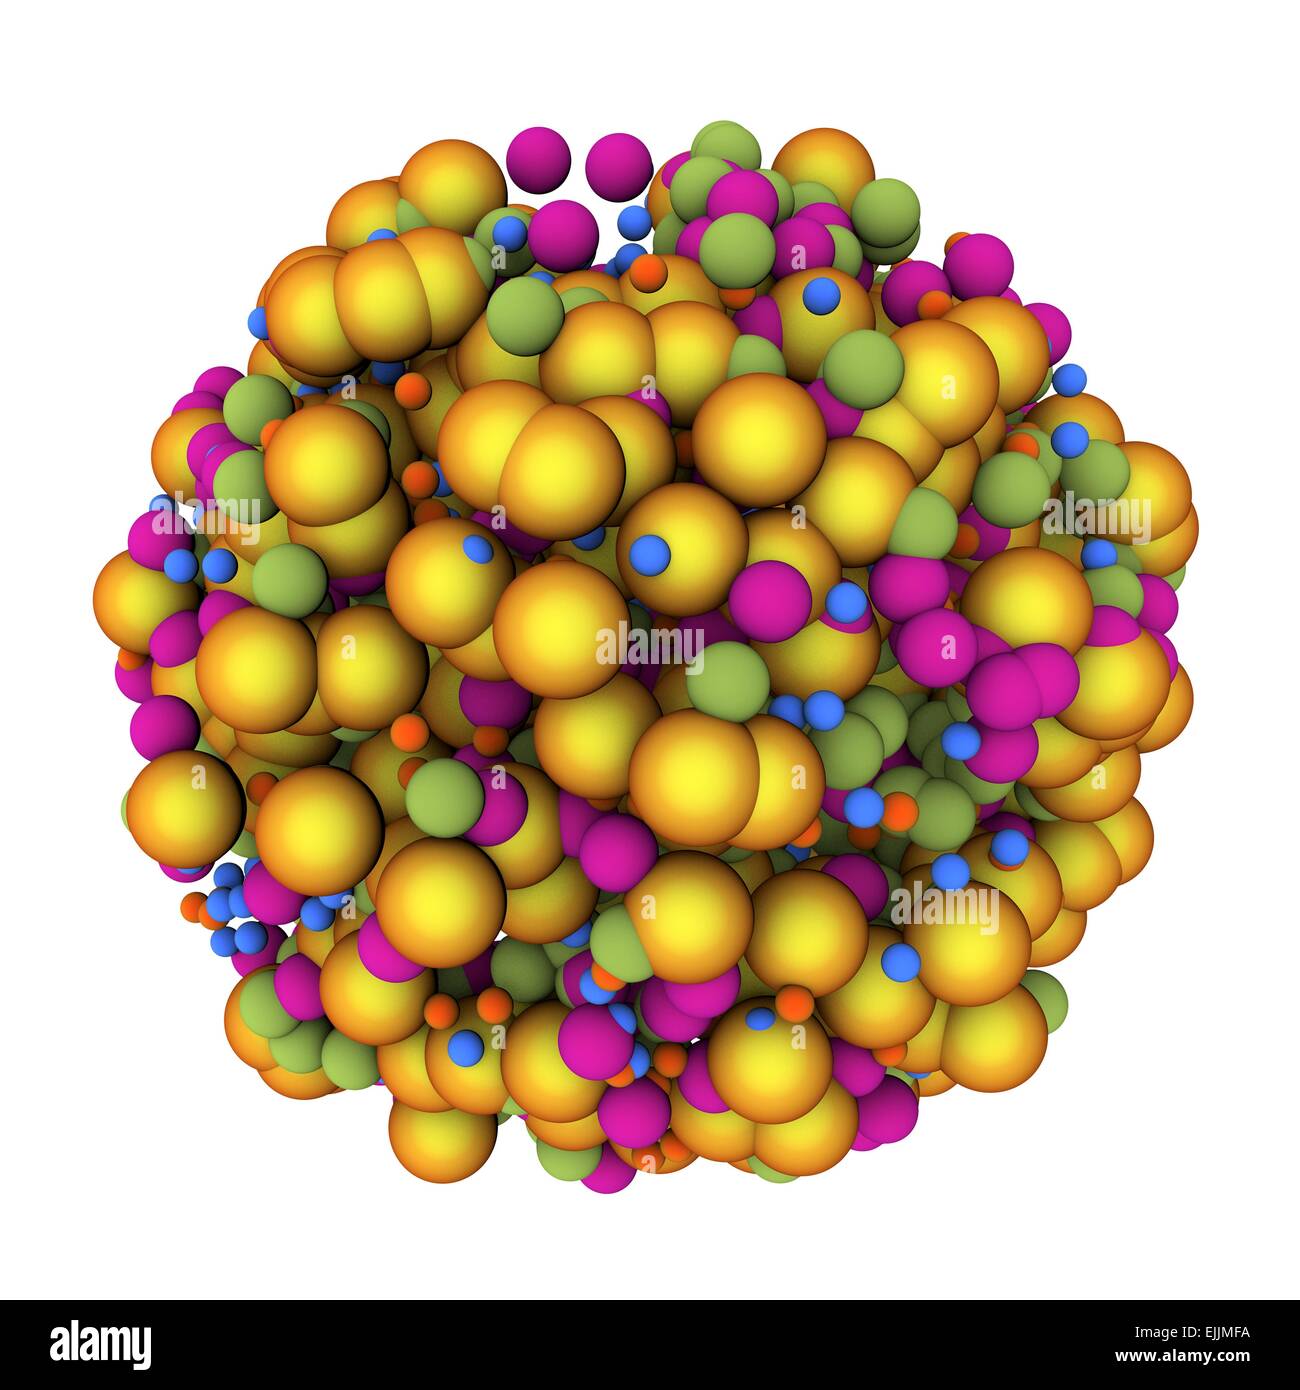 Abstract molecule, computer artwork. Stock Photo